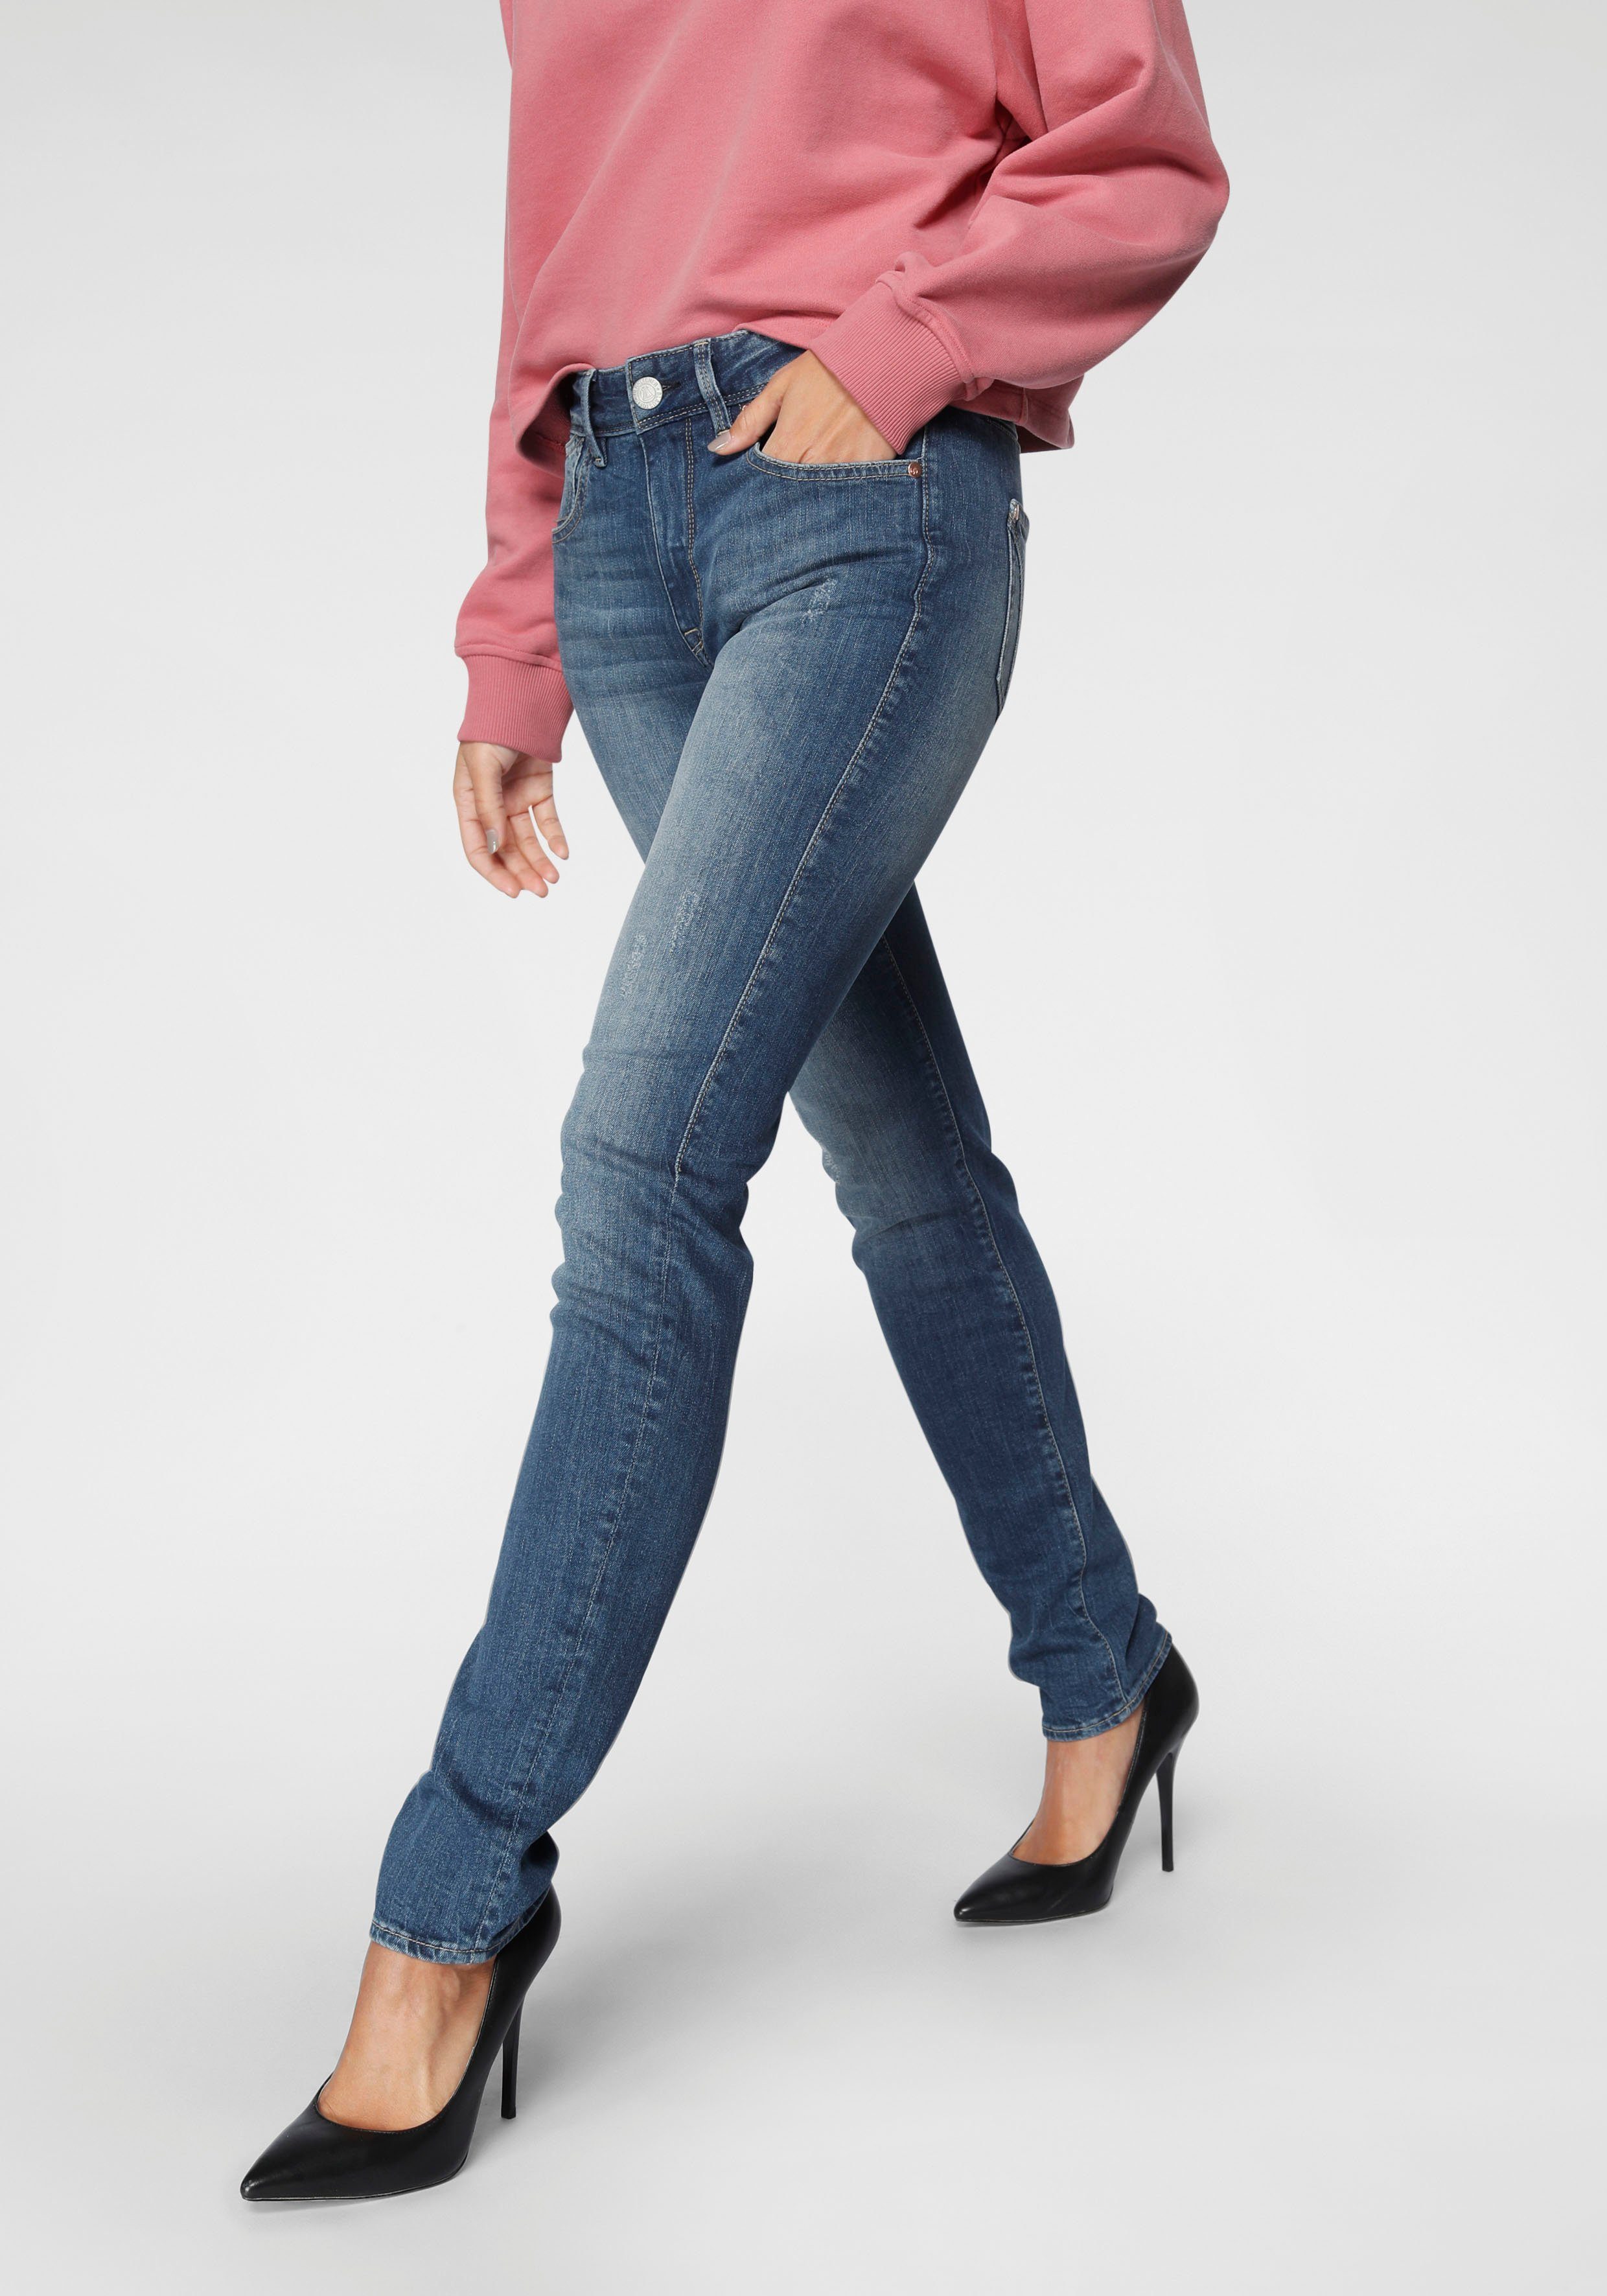 Günstige Jeans kaufen » Reduziert im SALE | OTTO